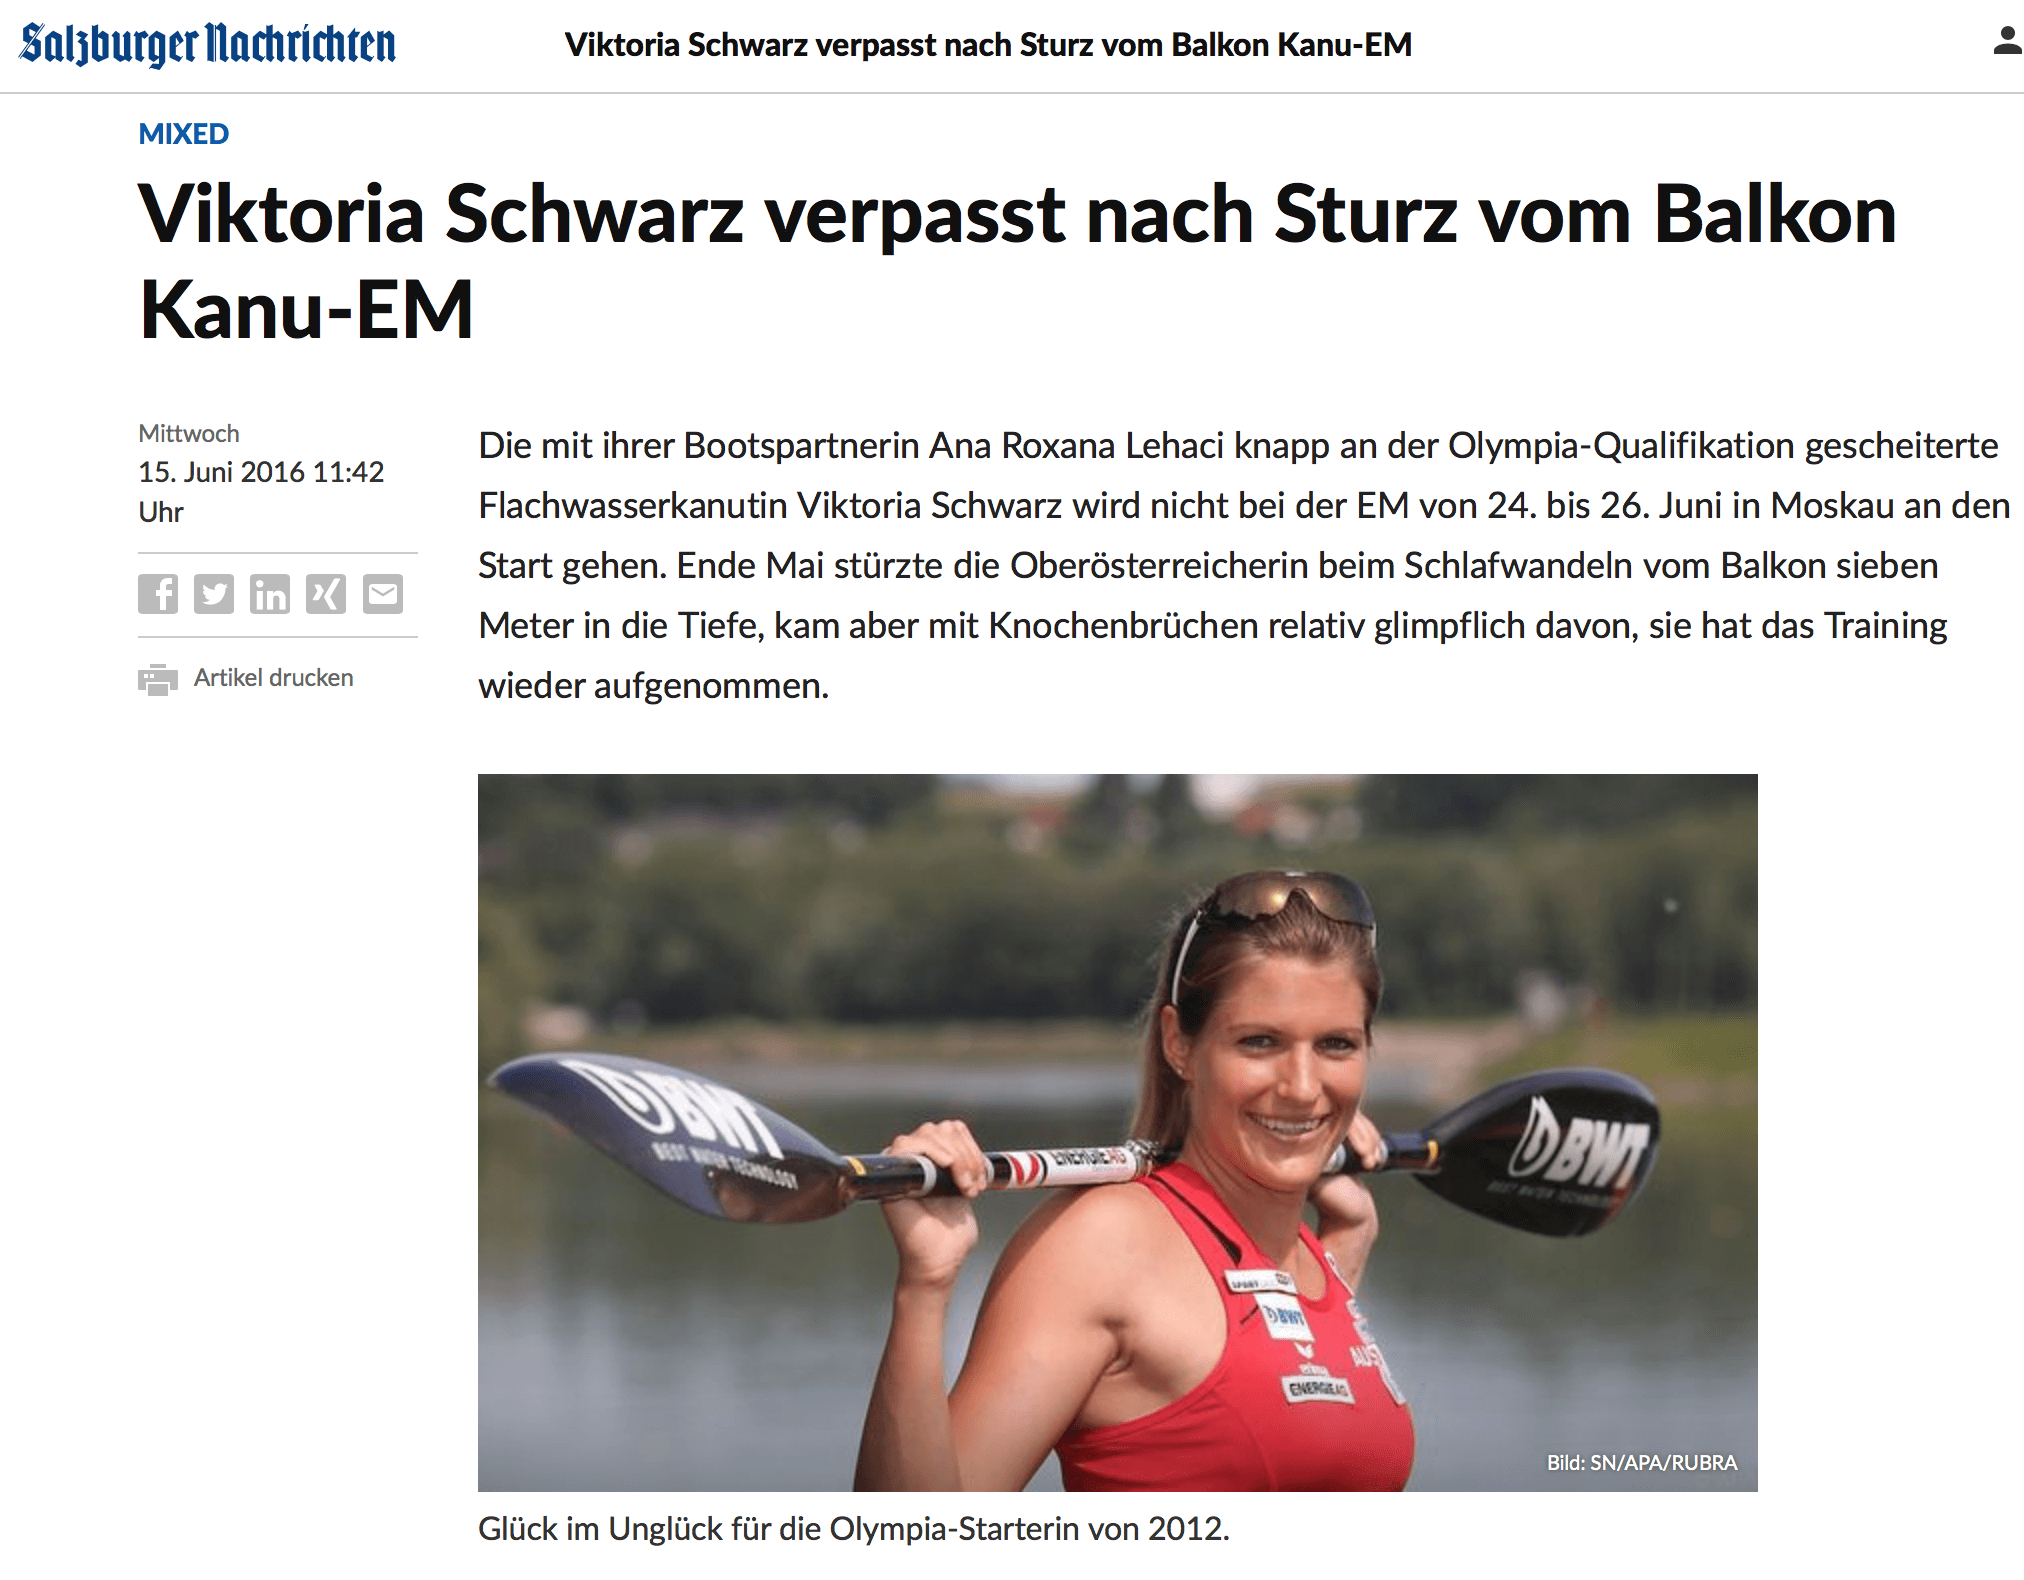 Viktoria Schwarz verpasst nach Sturz von Balkon EM